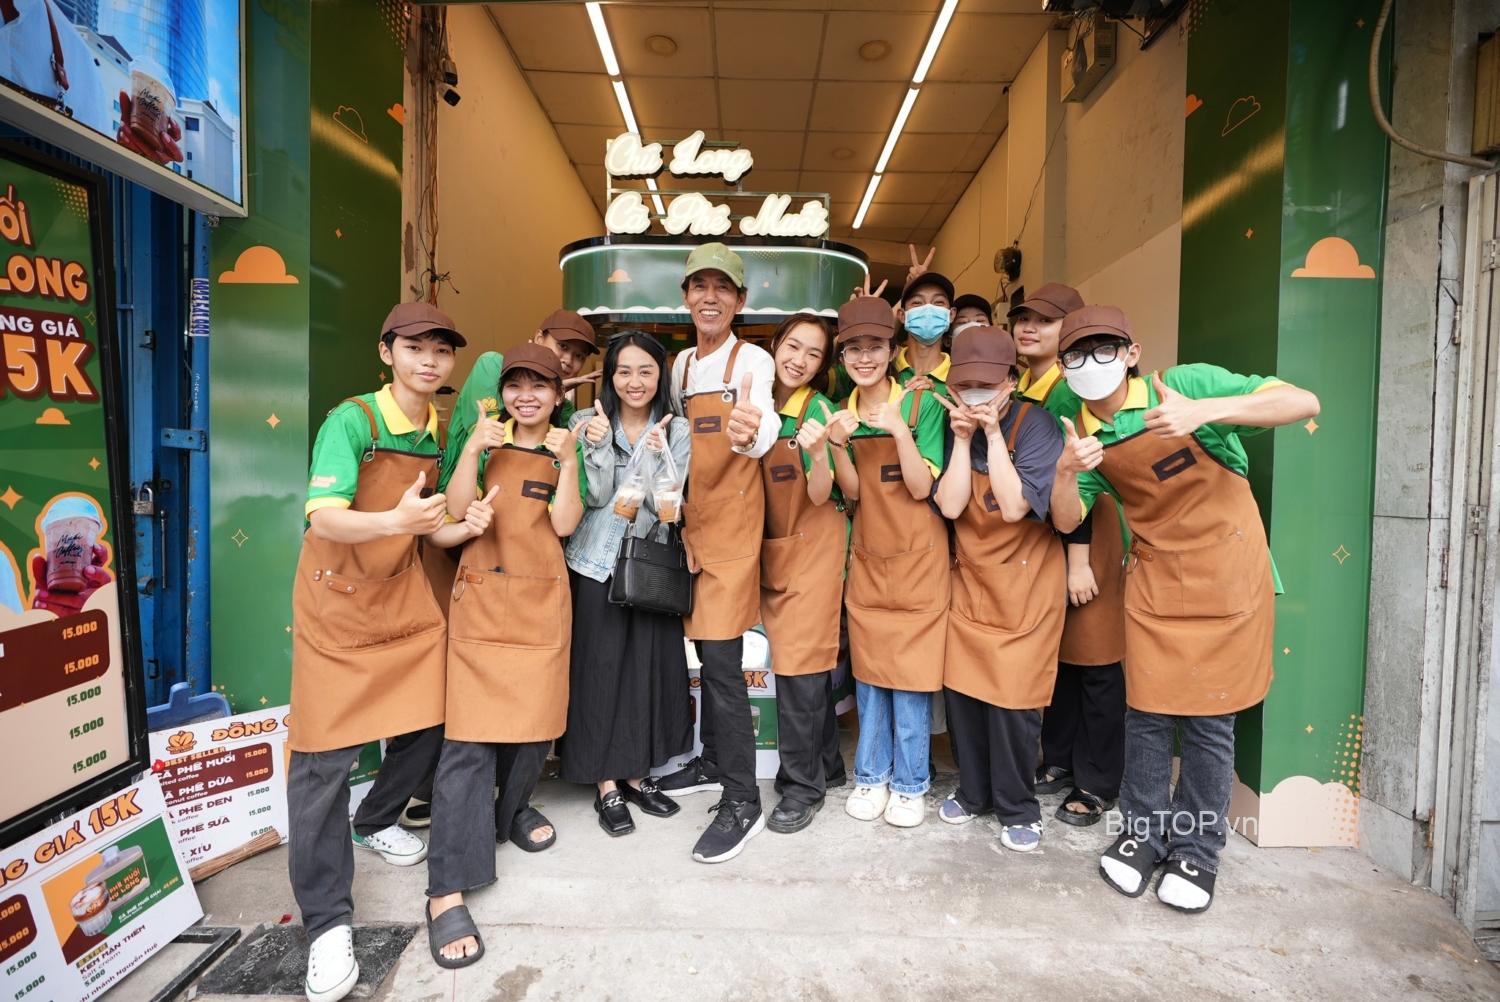 Top 3 Thương hiệu Cafe muối nổi tiếng nhất hiện nay - Big TOP Việt Nam